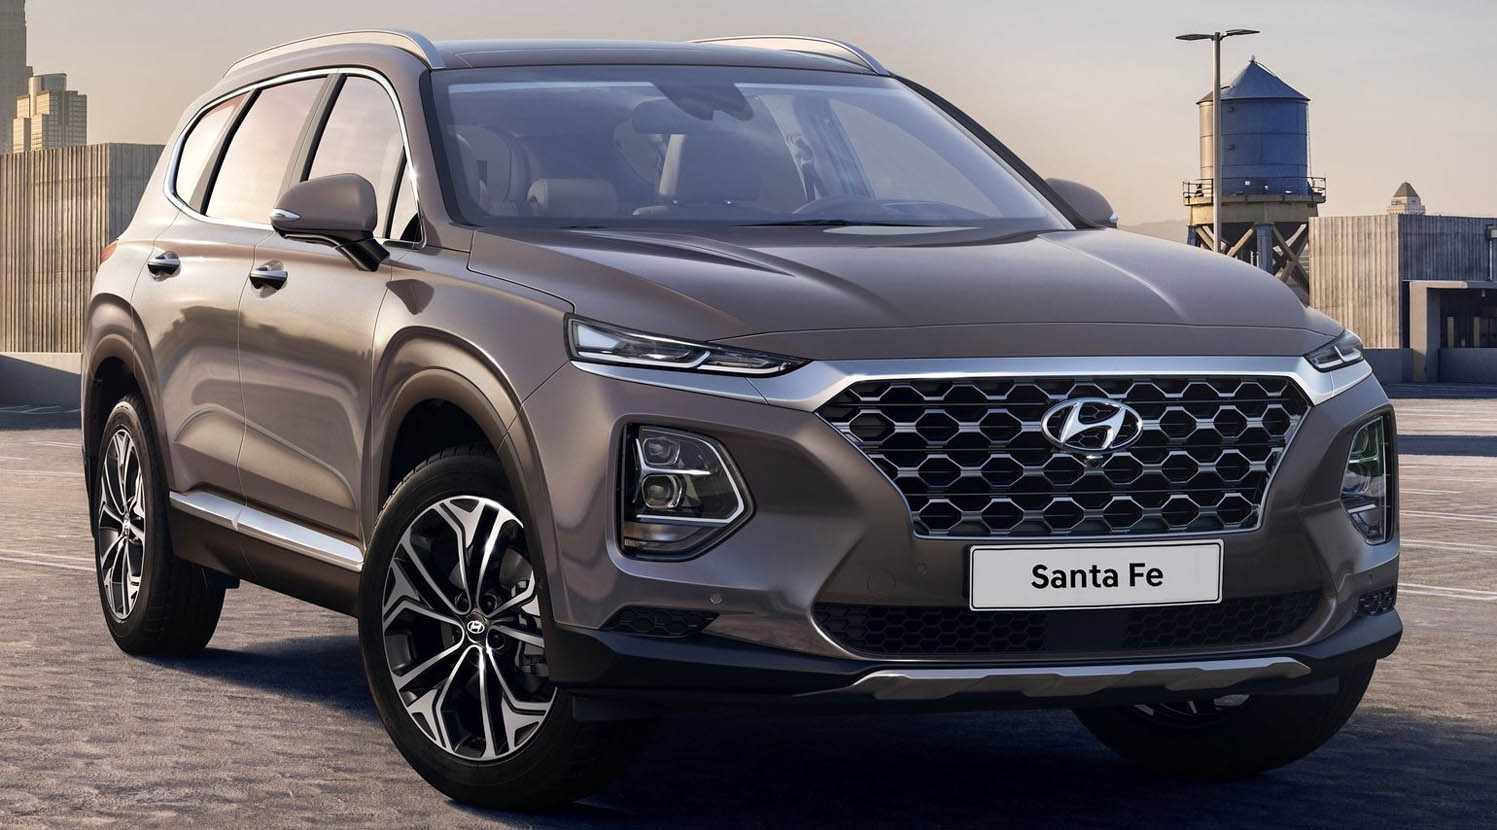  هيونداي سانتافي 2021 الجديدة كلياً القادمة – تحديث يعكس أحدث تطور للسيارات متعددة الأ  Hyundai-Santa_Fe